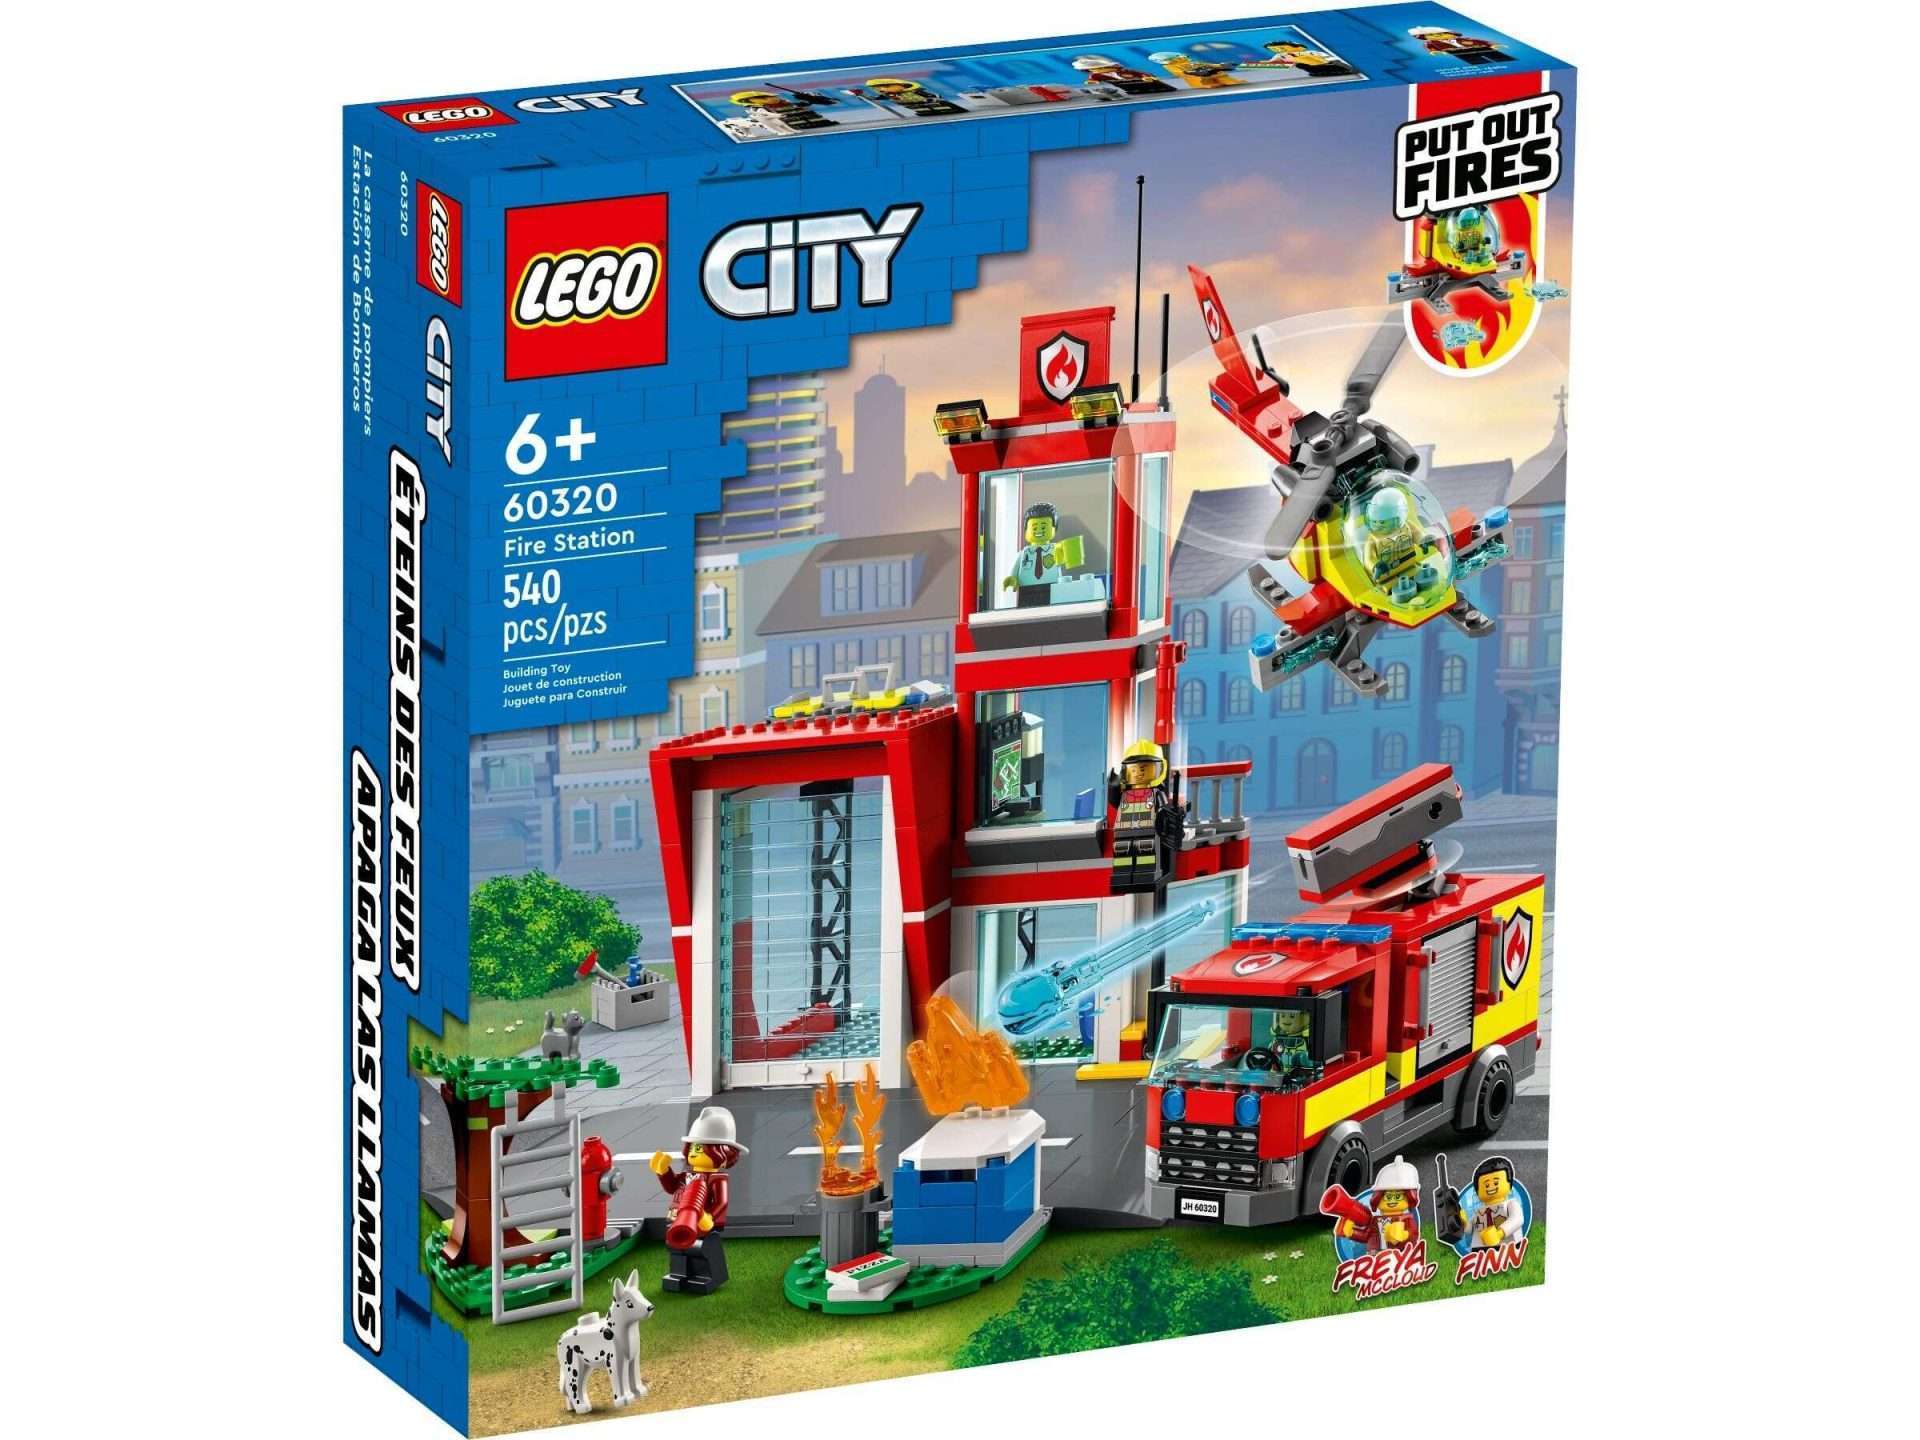 CITY - Fire Station - 60320